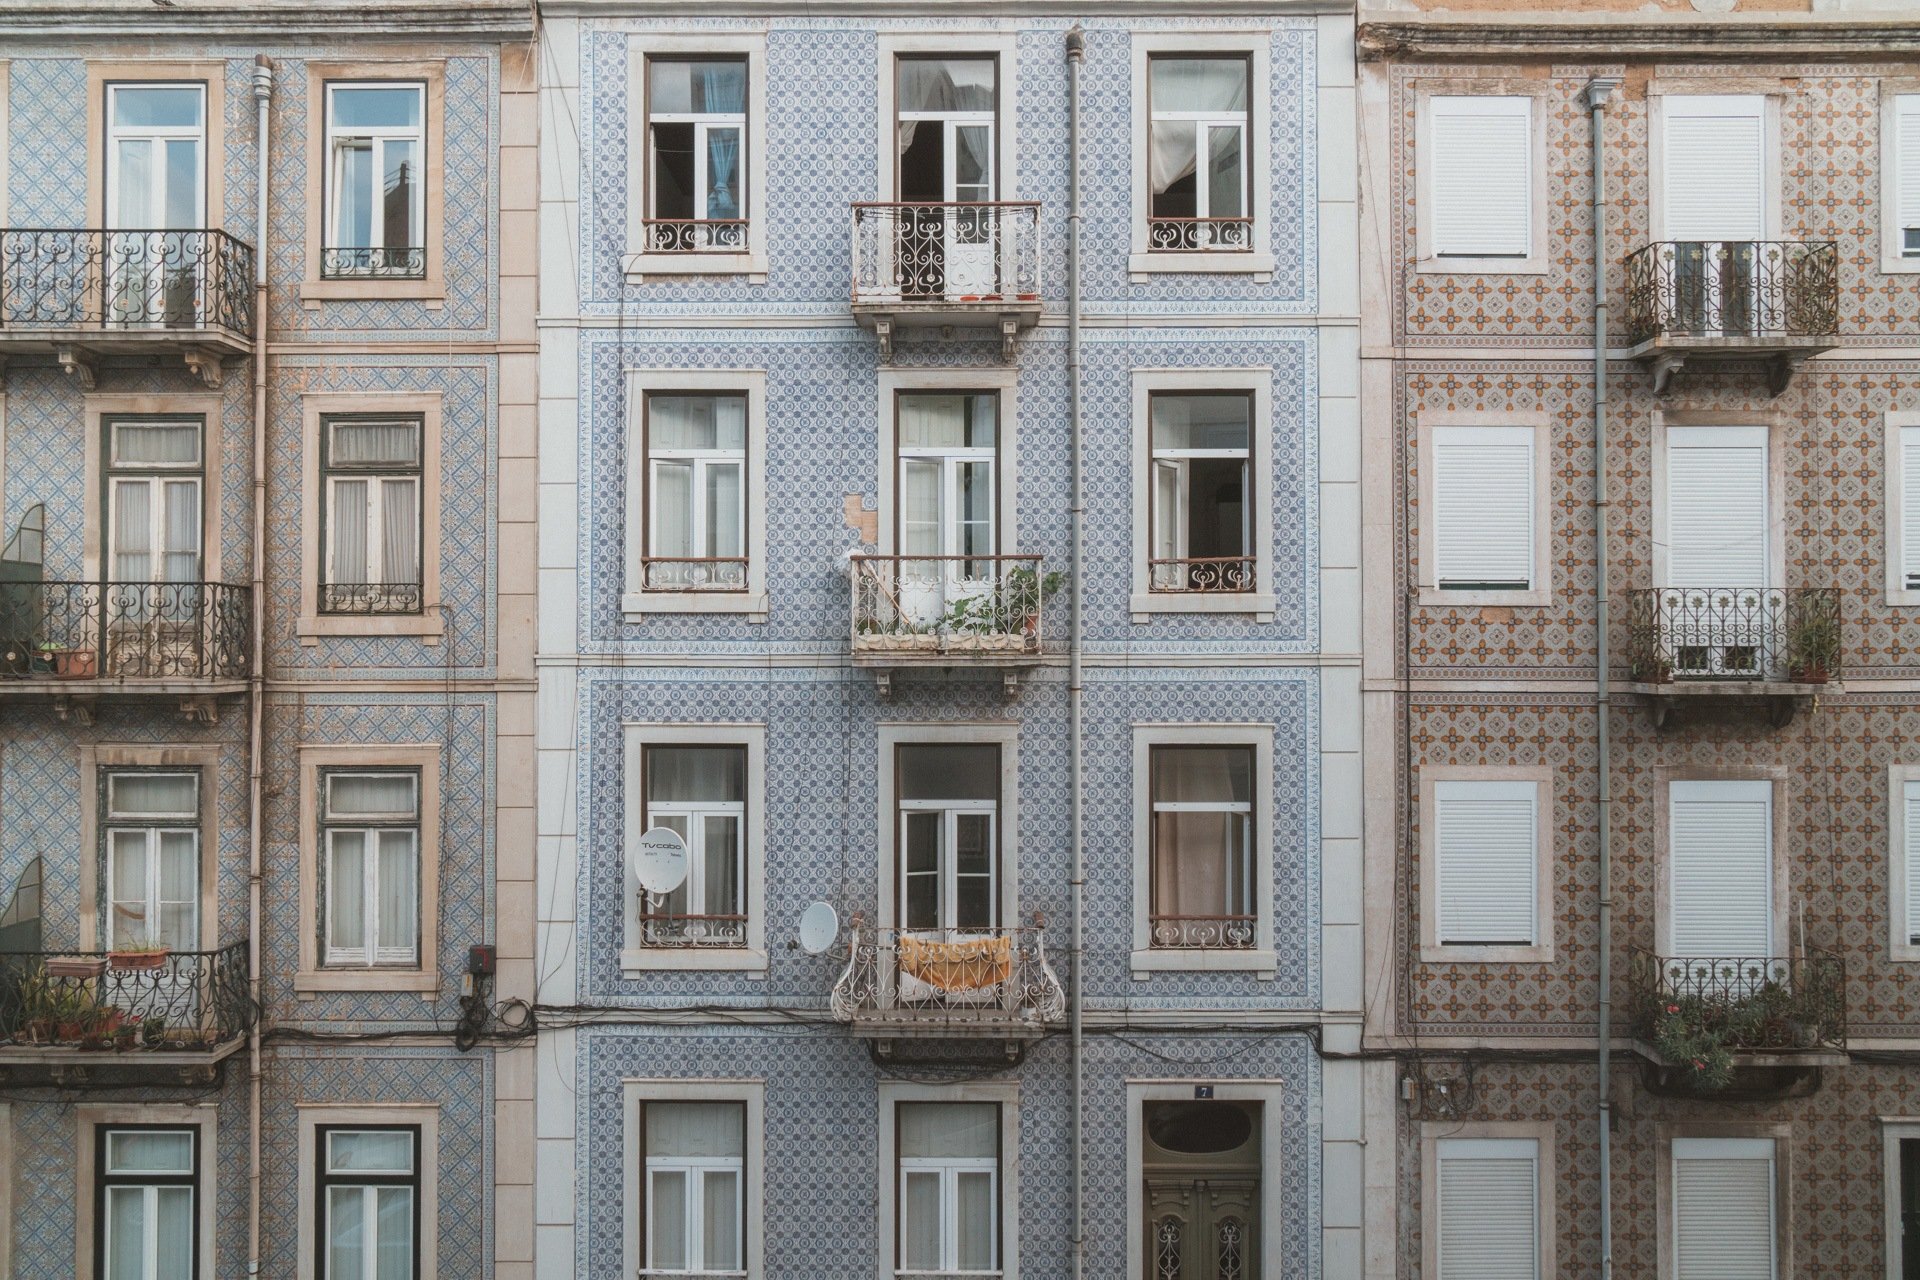 tiled buildings in Lisbon